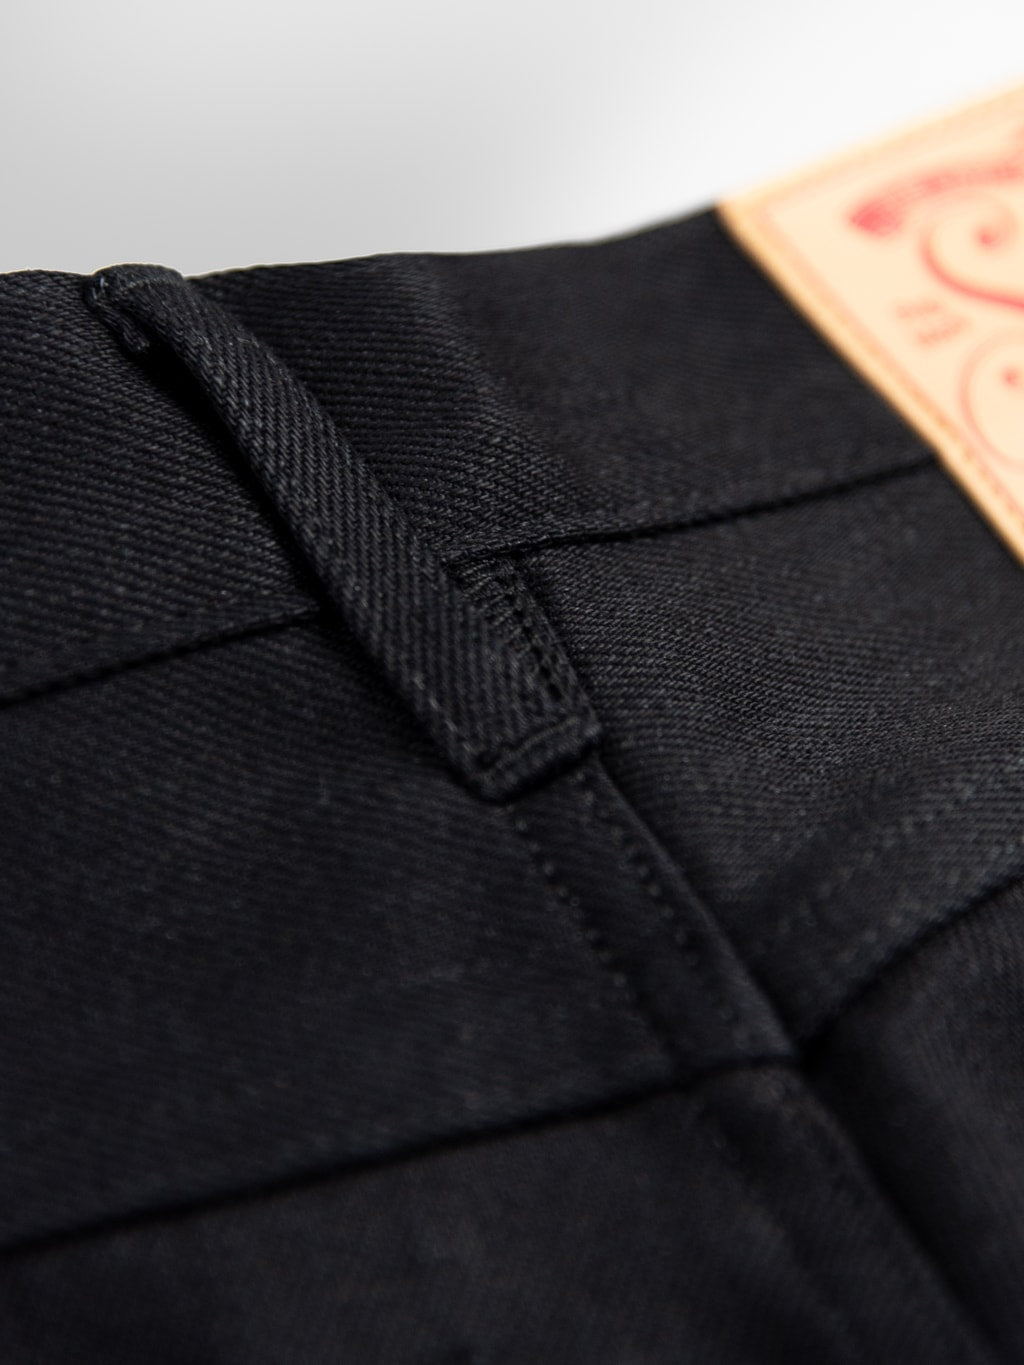 Stevenson Overall Big Sur 210 Slim Tapered jeans solid black belt loop